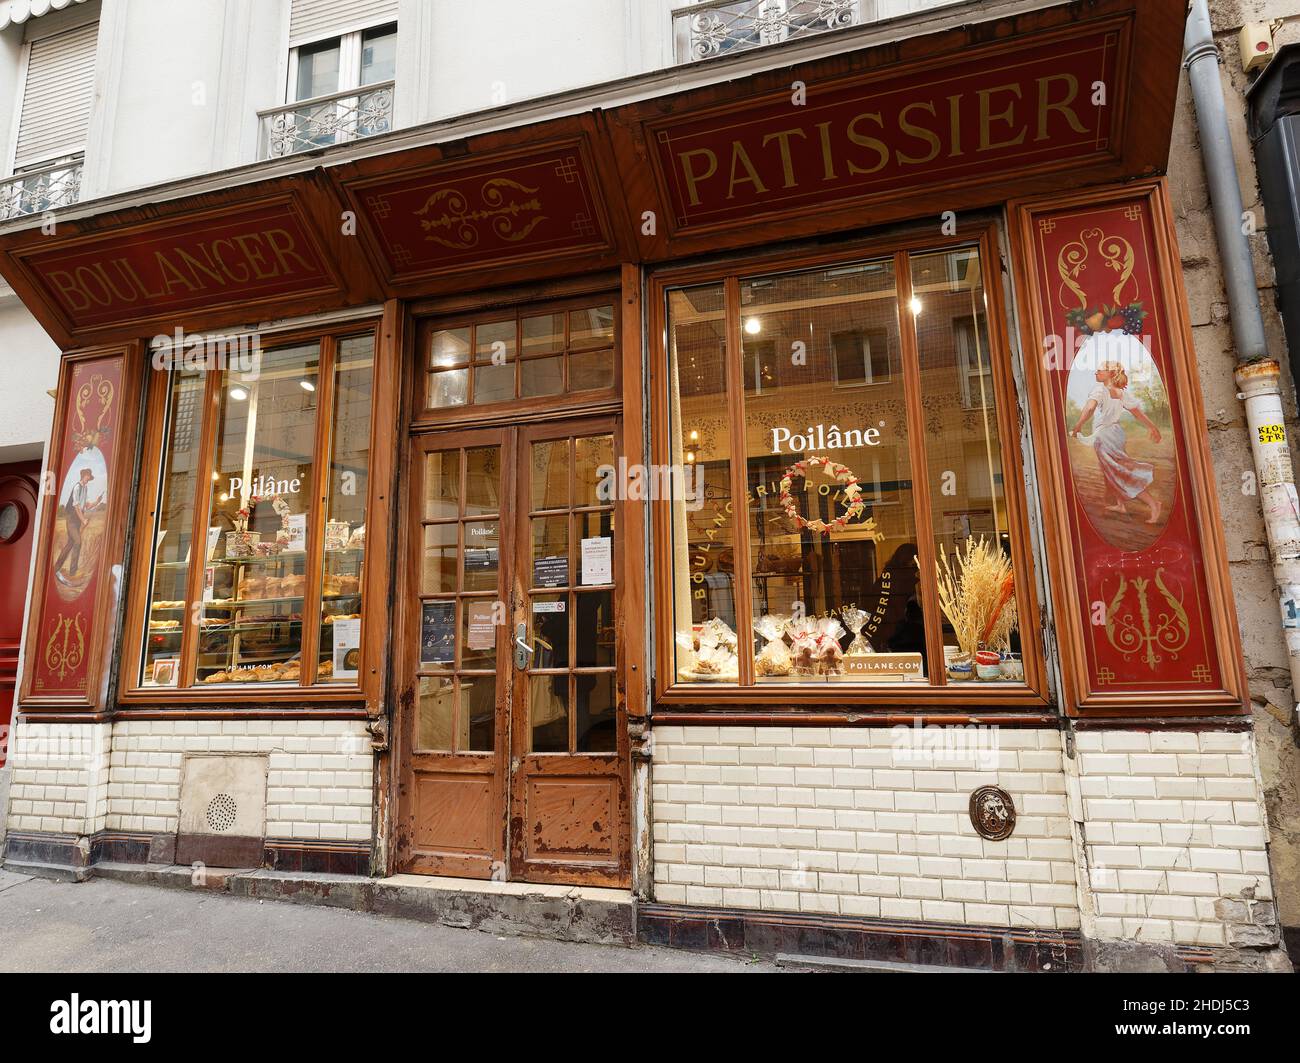 La boulangerie et pâtisserie d'époque Poilane est située dans le quartier 19th de Paris, dans la rue Crimee, près du parc Buttes Chaumont.Paris.France. Banque D'Images